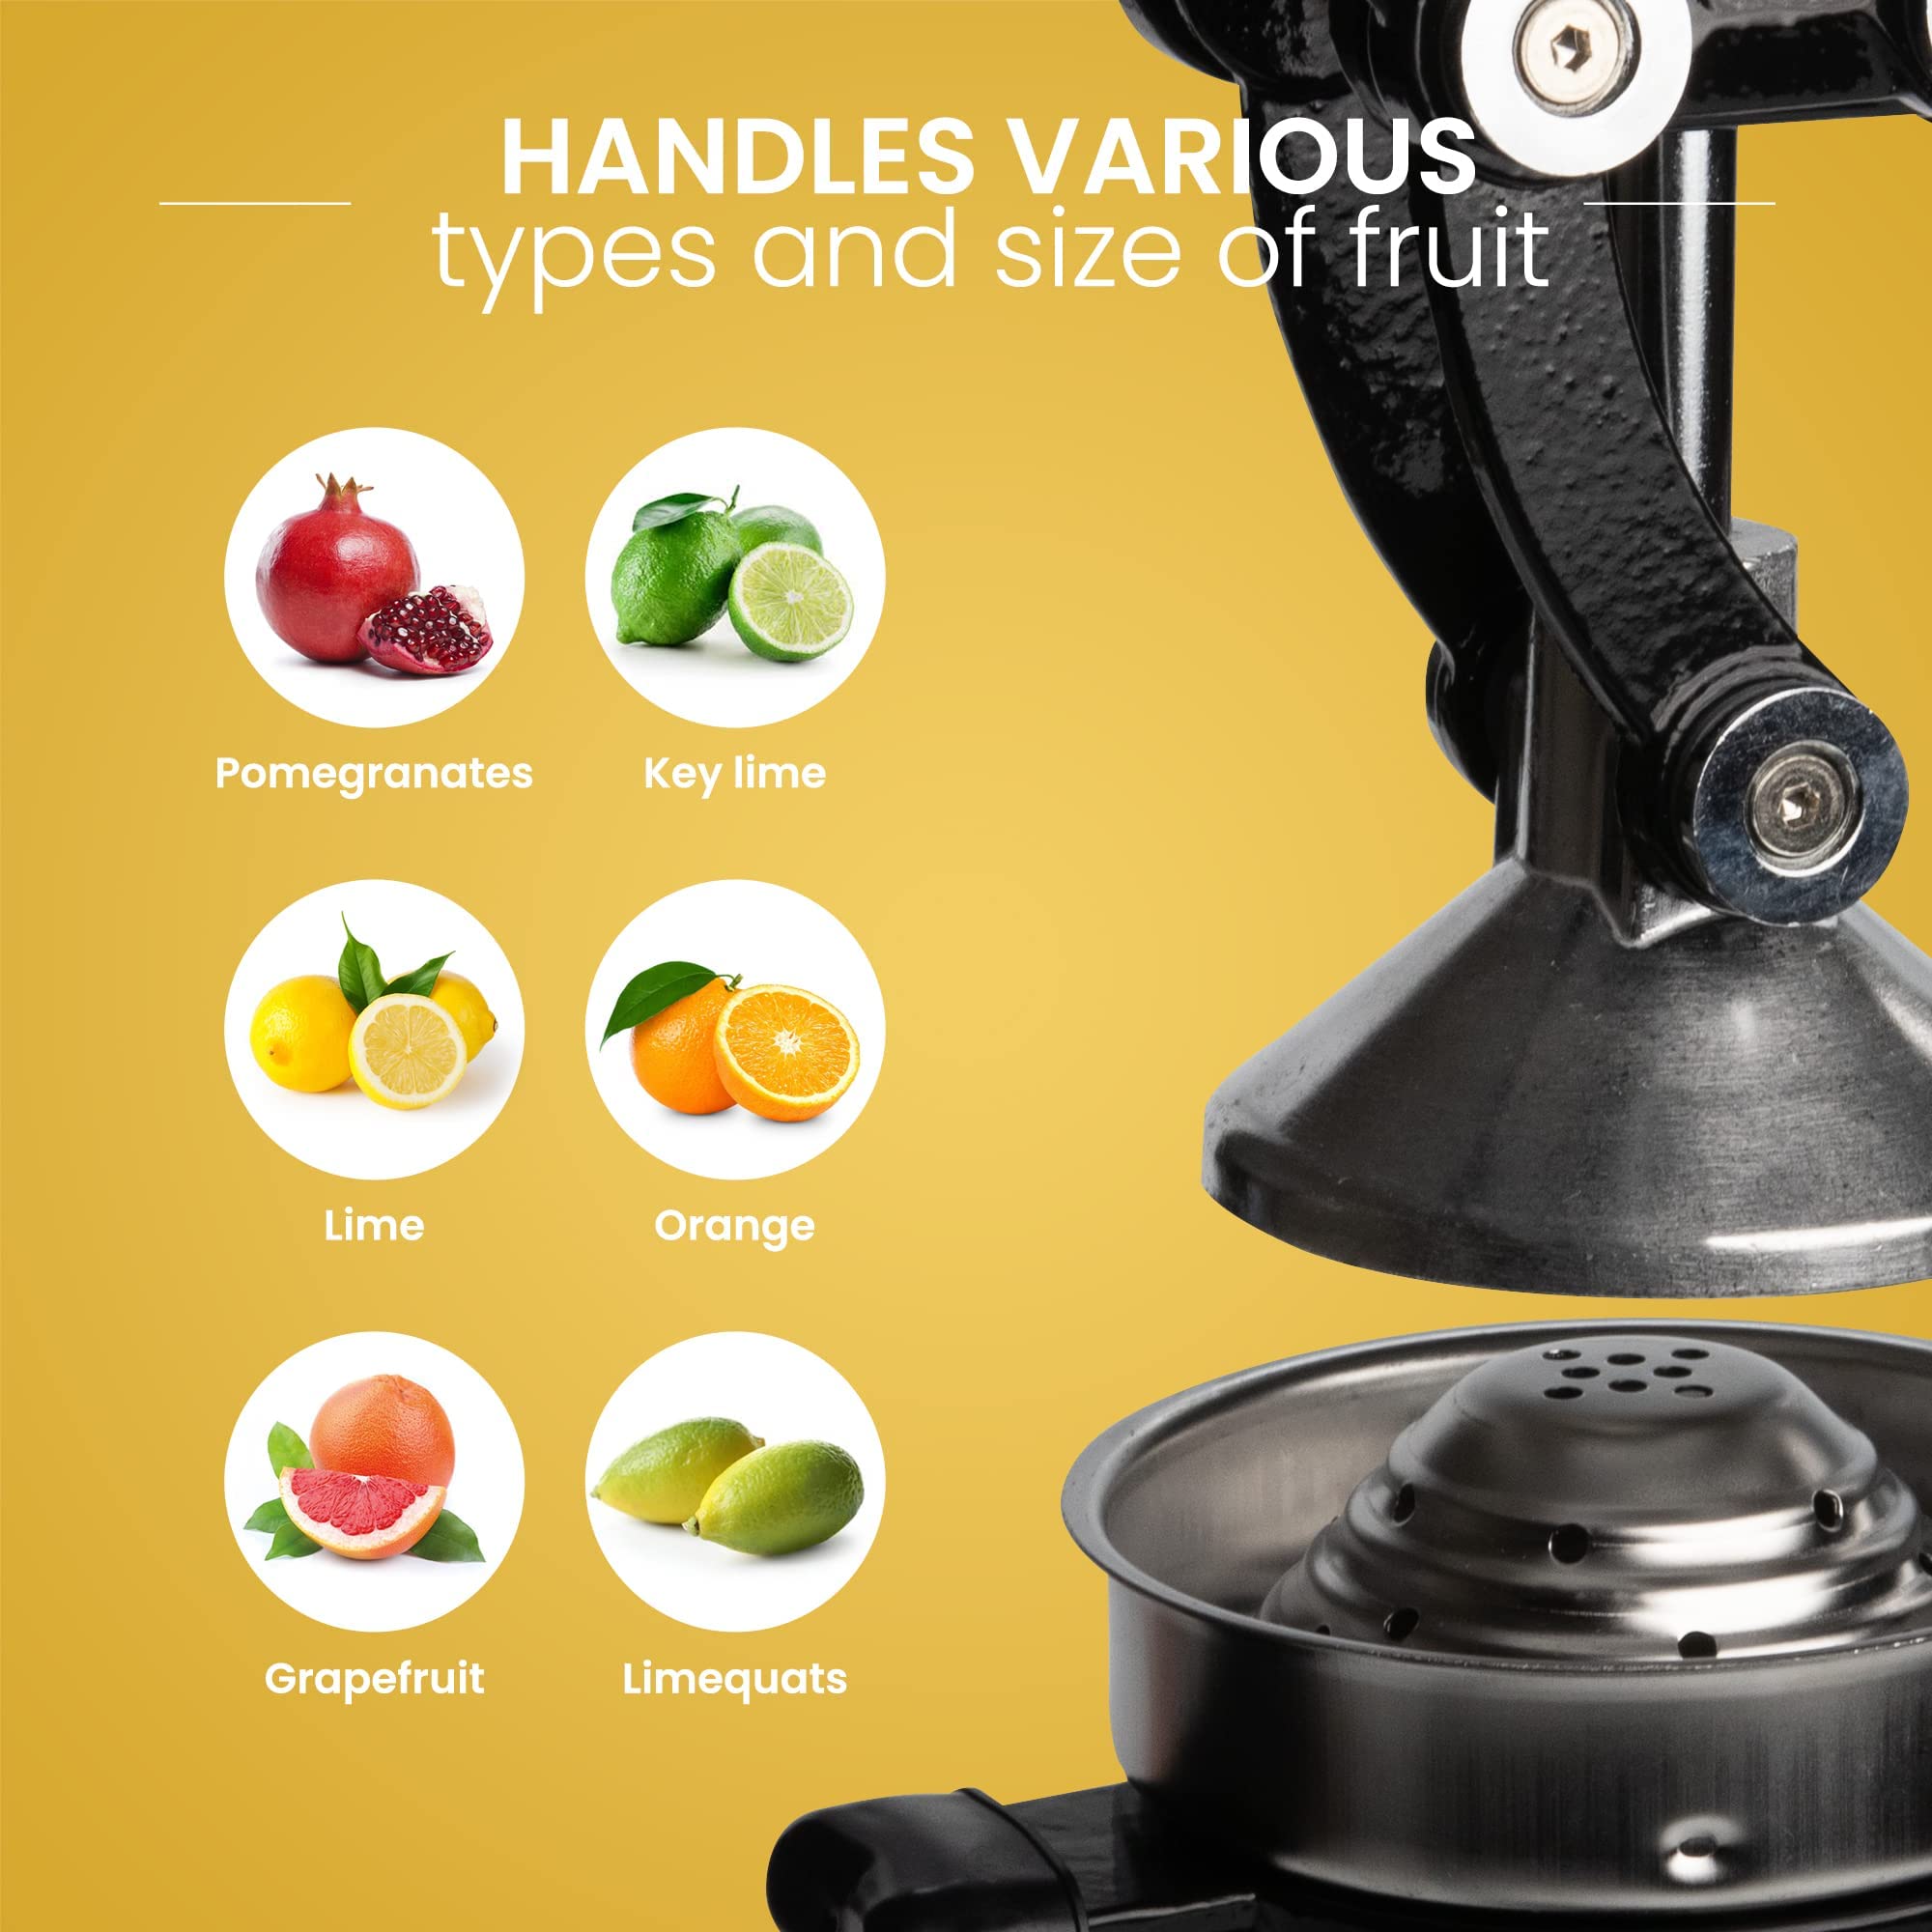 VIO Commercial Citrus Juicer Hand Press Manual Citrus and Orange Squeezer, Premium Quality Heavy Duty Manual Orange Juicer and Lime Squeezer Press Stand BLACK